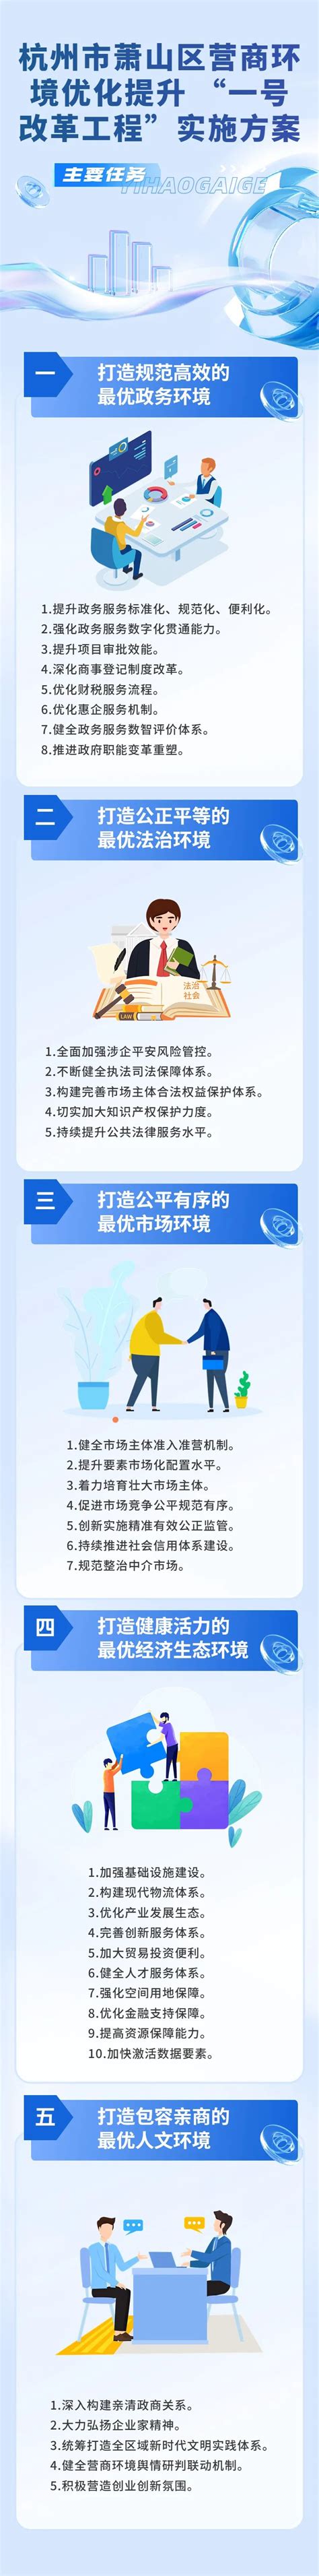 杭州萧山区seo优化方法